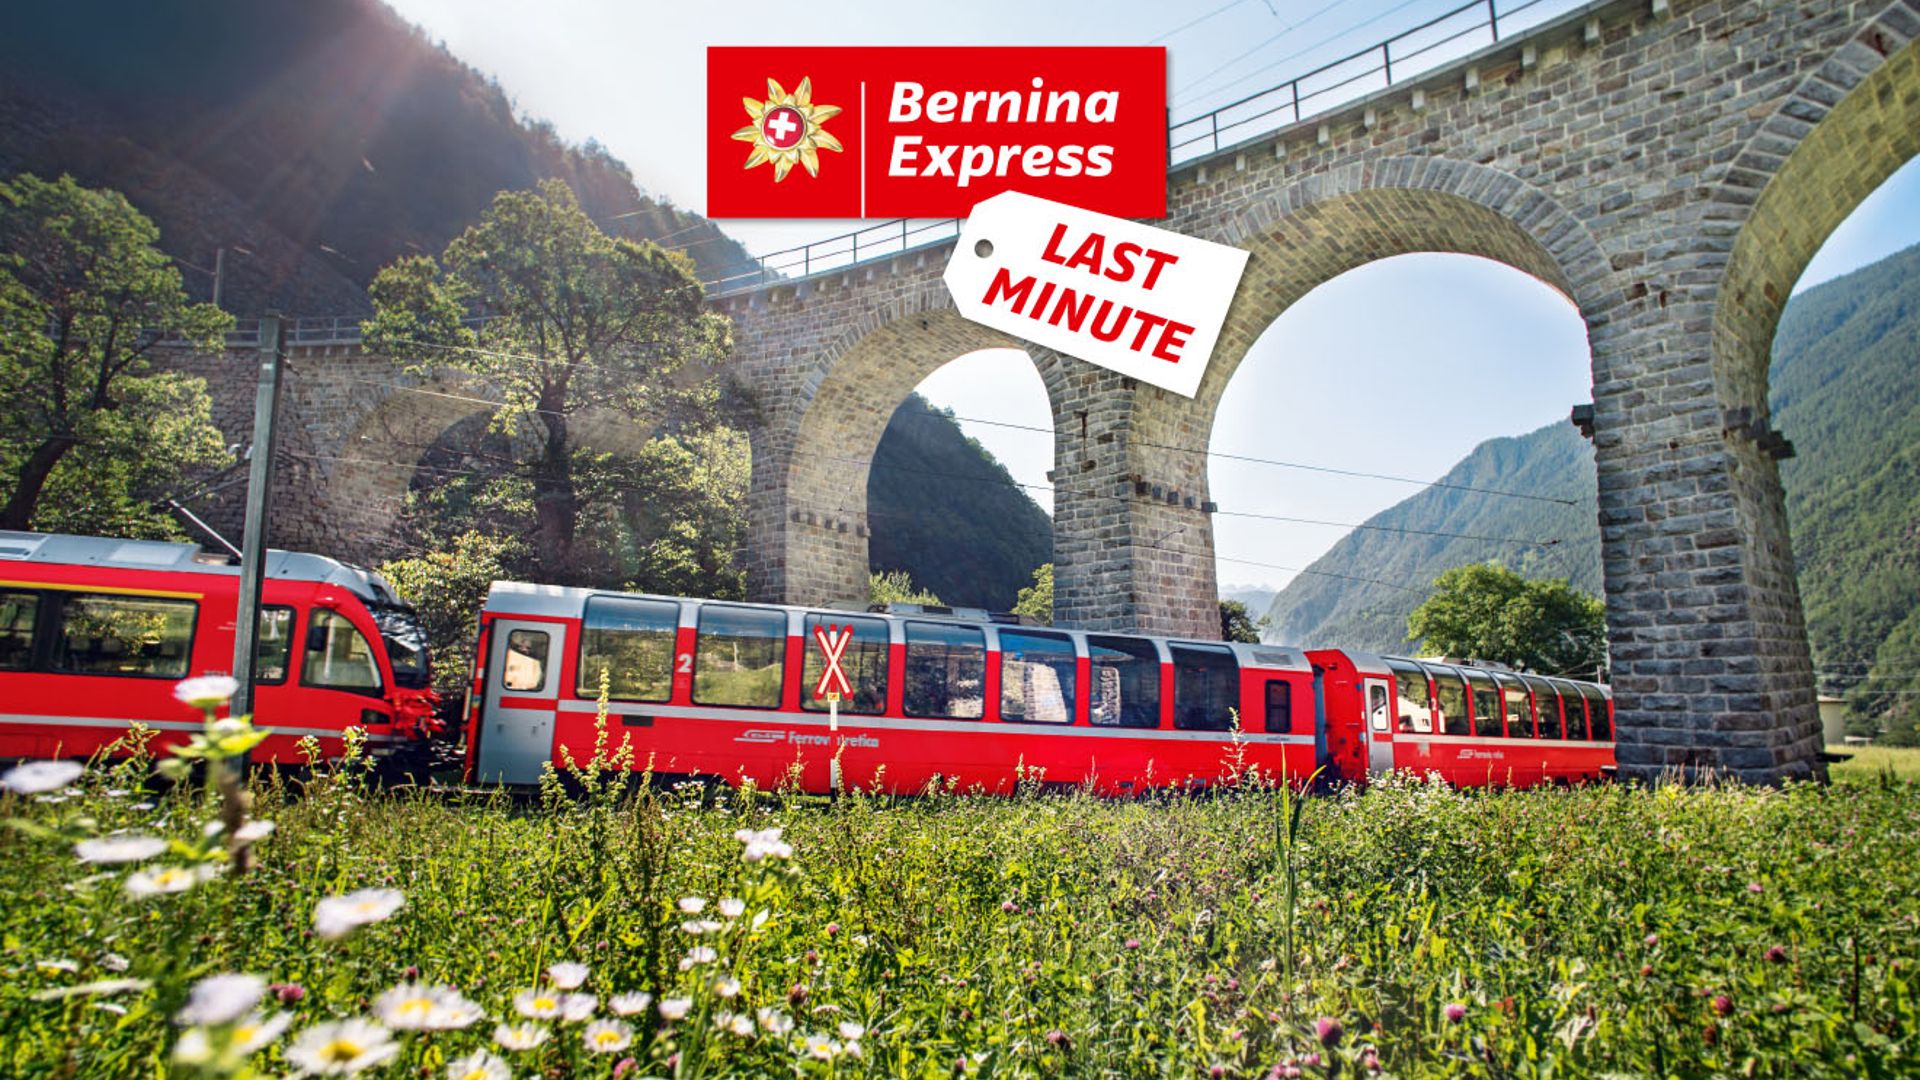 Bernina Express Last Minute